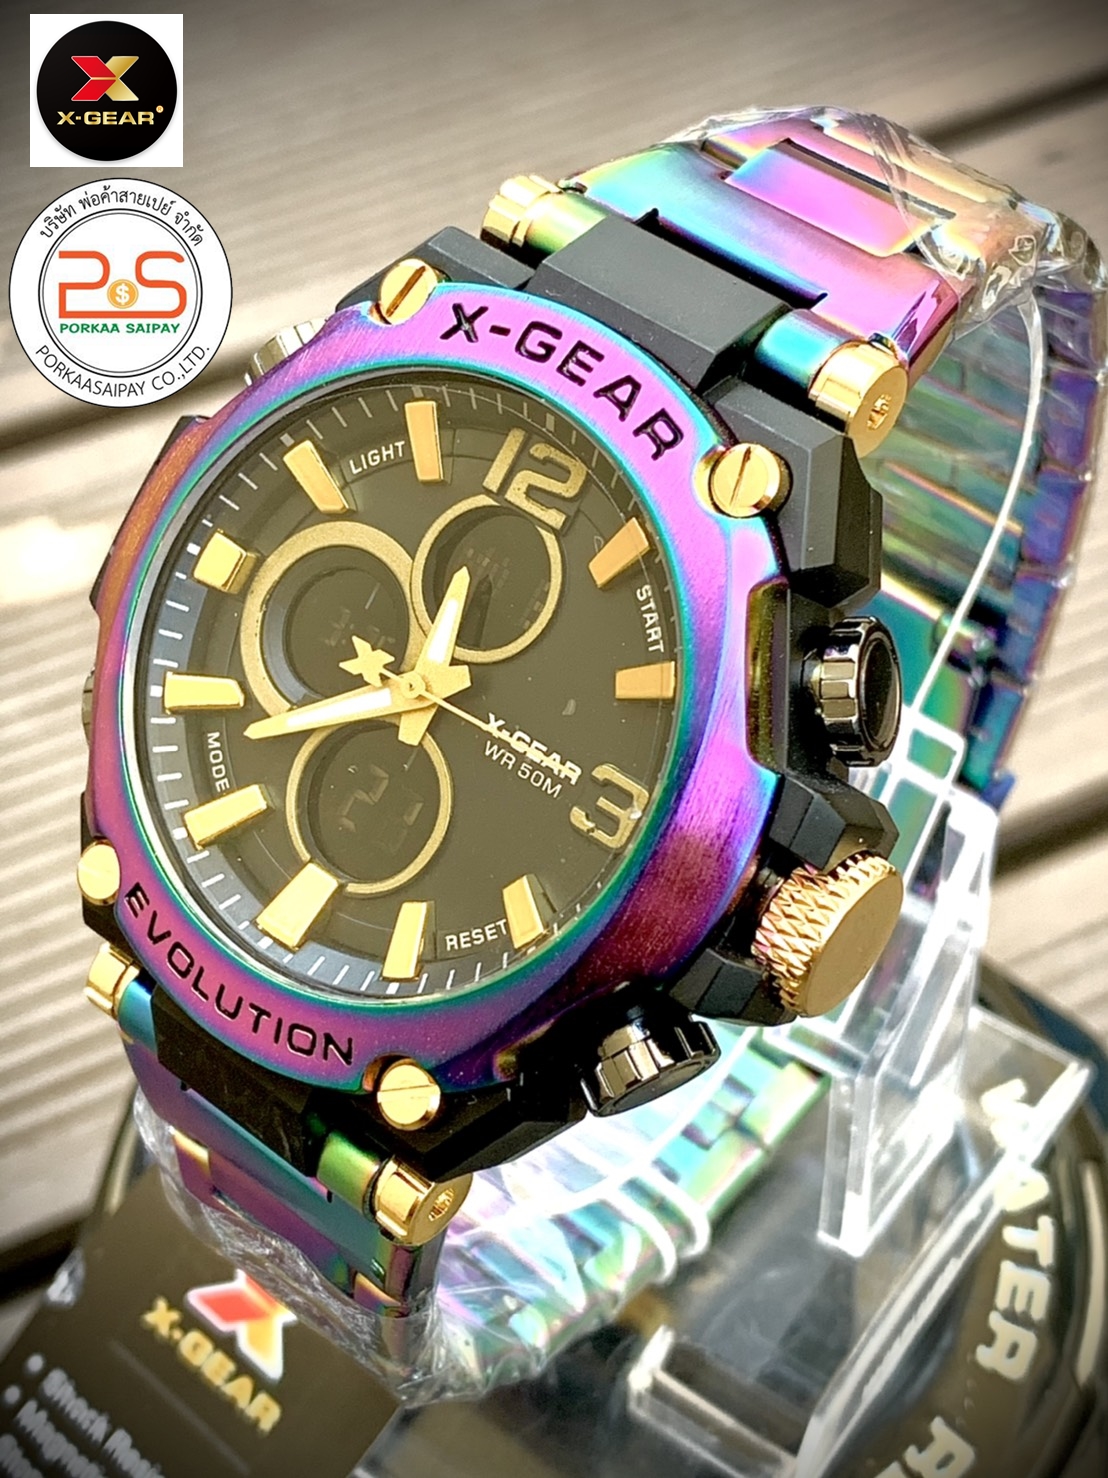 นาฬิกาข้อมือ  X-GEAR 3921 สี ไทเทเนียม ส่งจากไทย กันน้ำ จับเวลา World Time ตั้งปลุก จับเวลาถอยหลัง  ไฟ LED แบบออโต้ไลท์ มีพรายน้ำ รุ่นล่าสุด